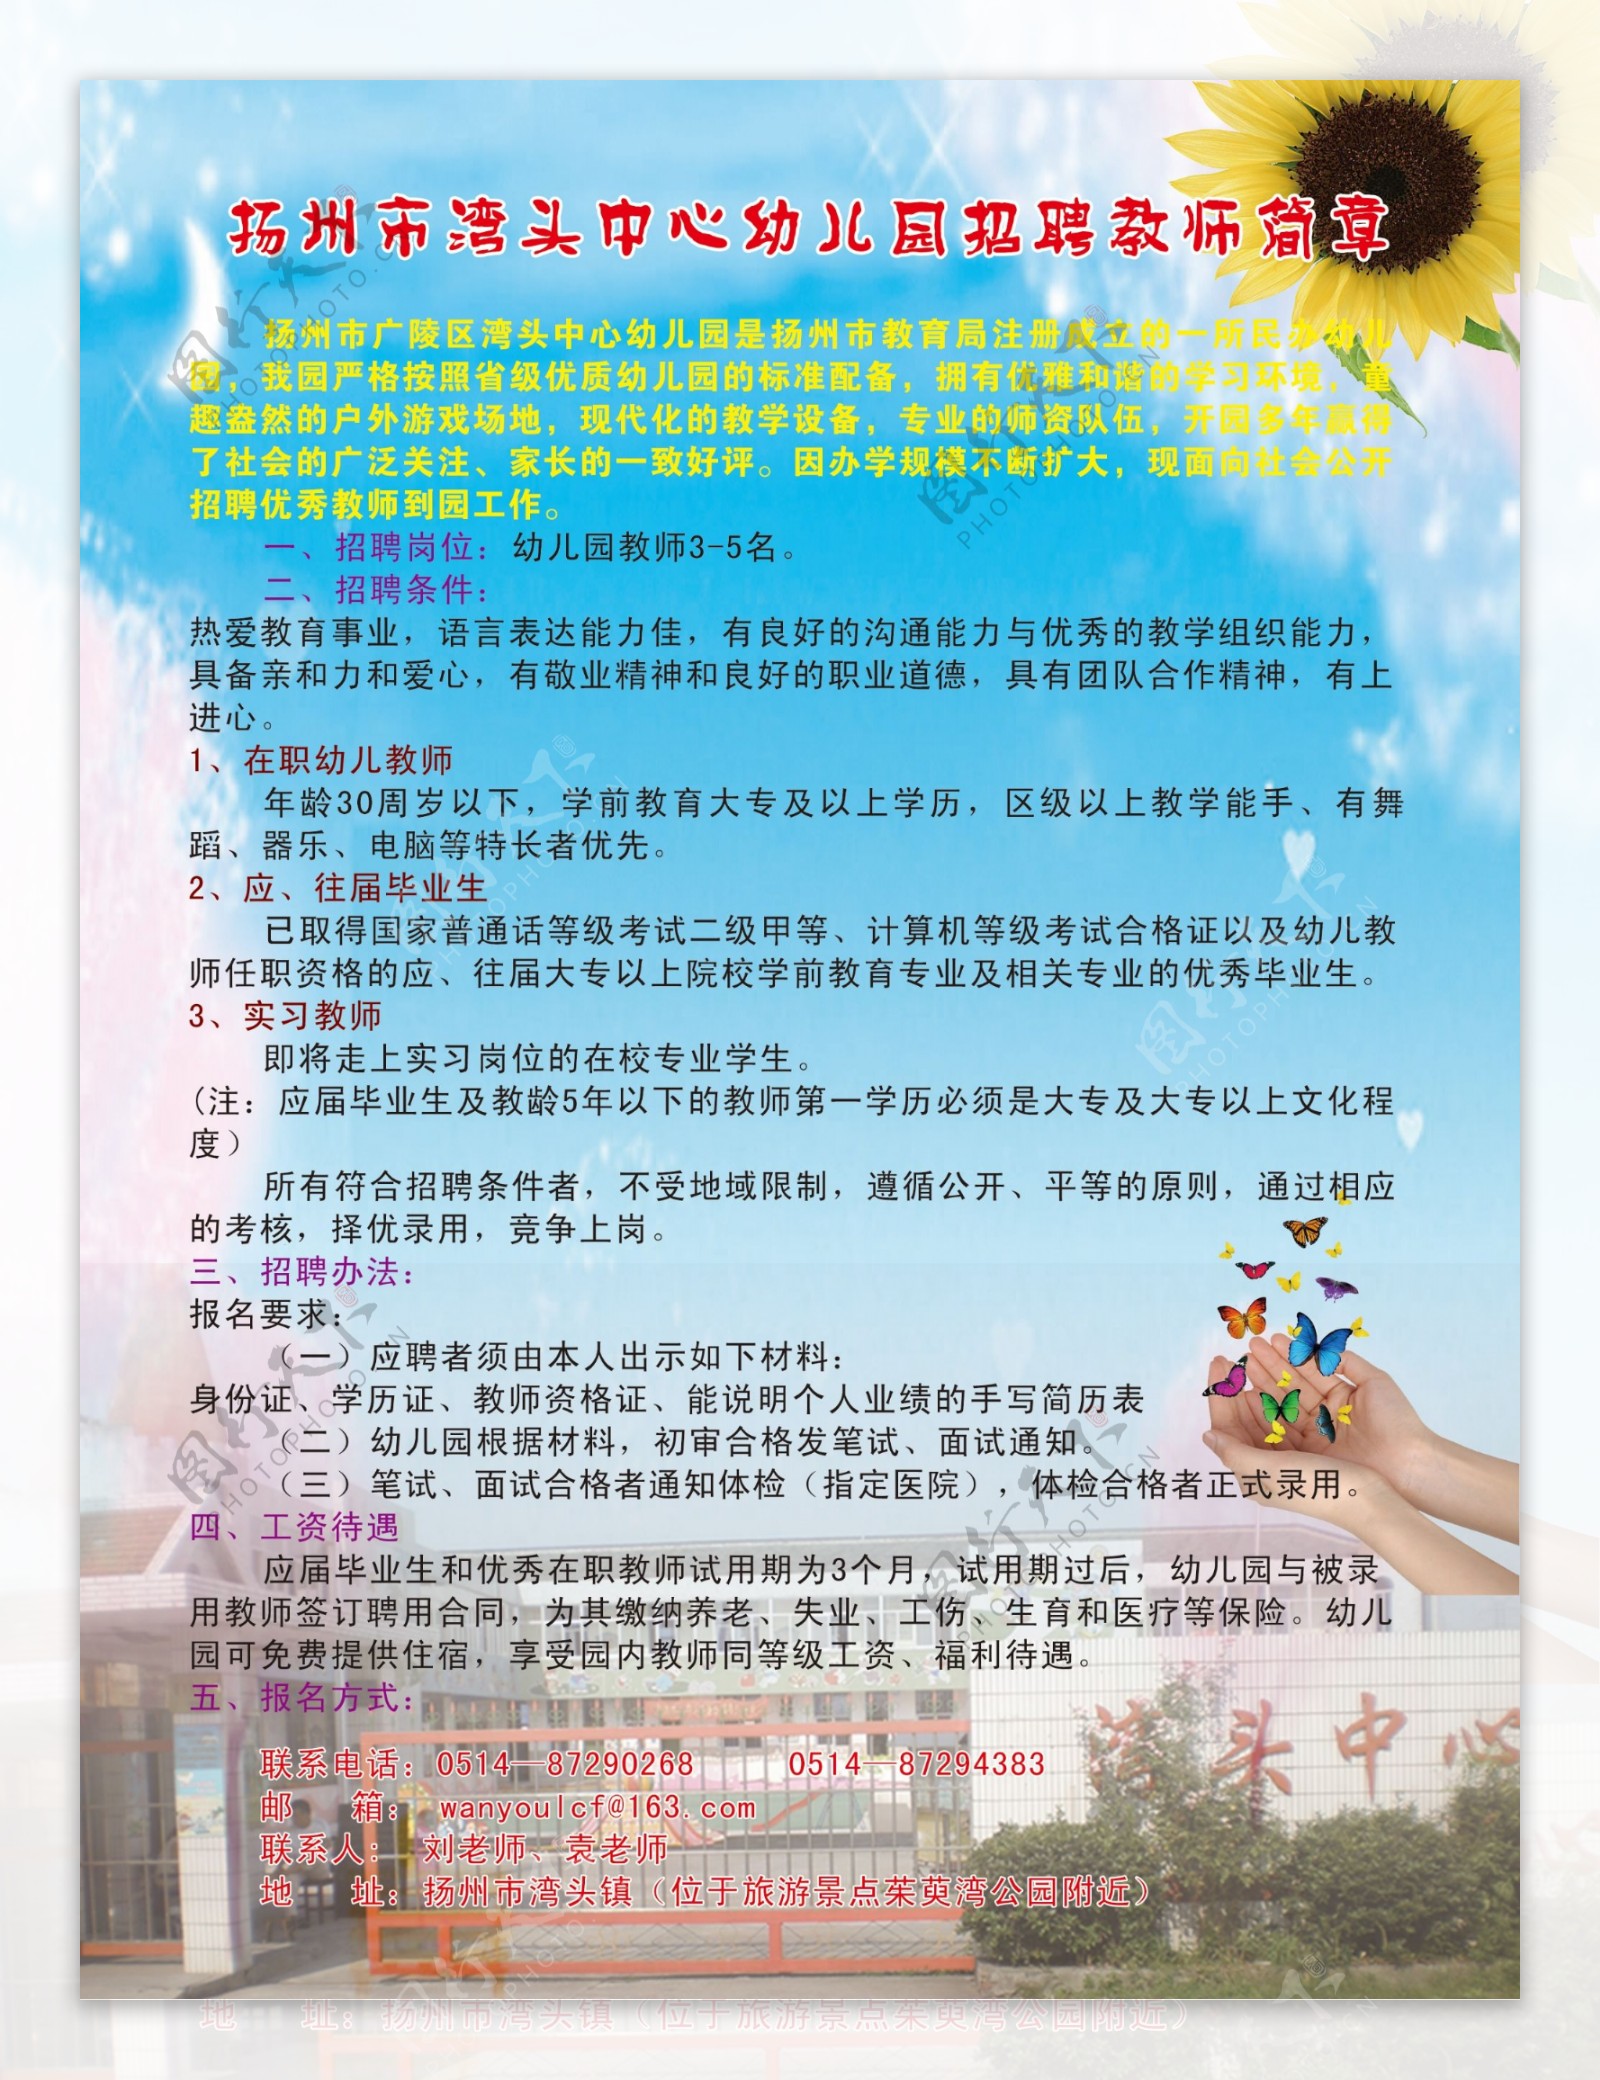 扬州市湾头中心幼儿园招聘教师简章图片